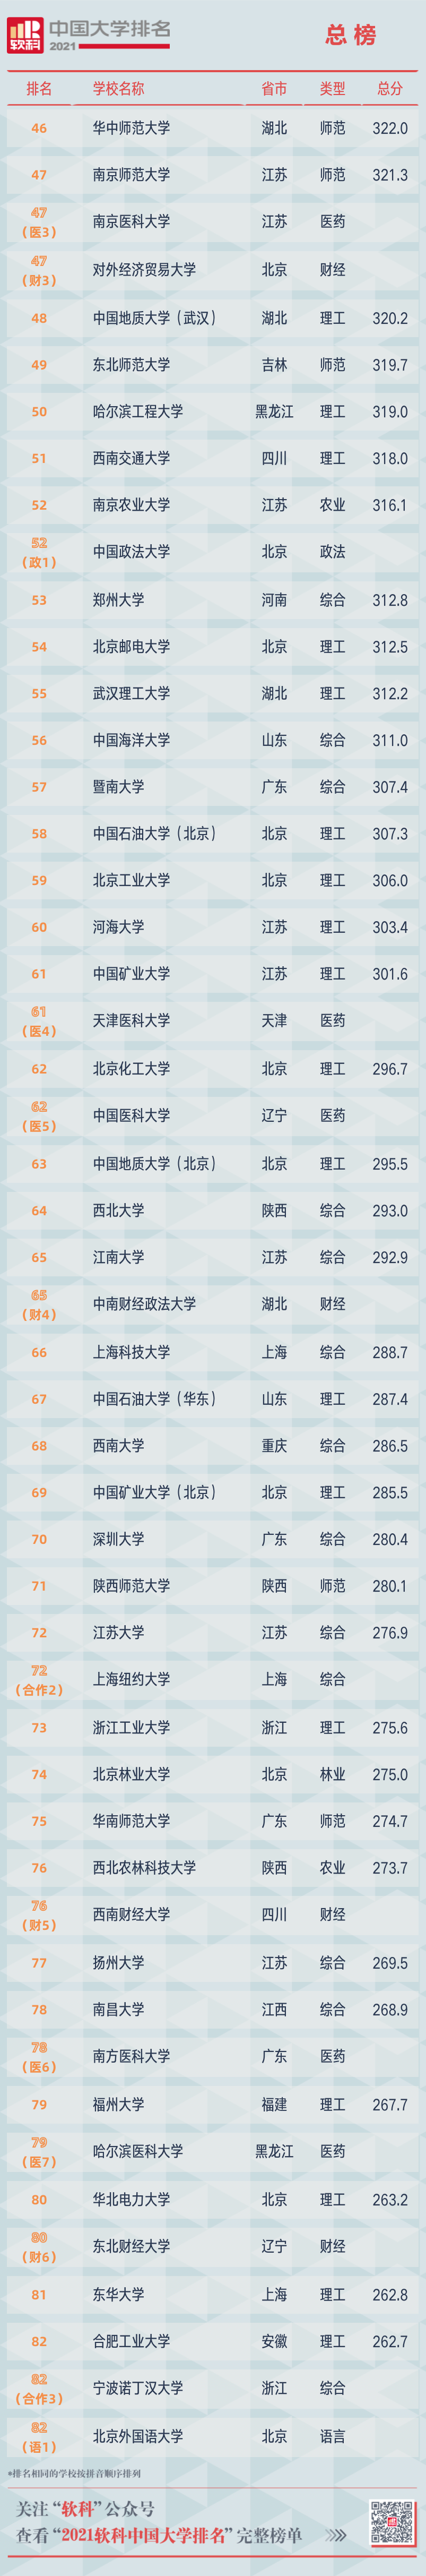 2021软科中国大学排名重磅发布 广东中山大学位列第12位  排名 CWUR排名 第24张